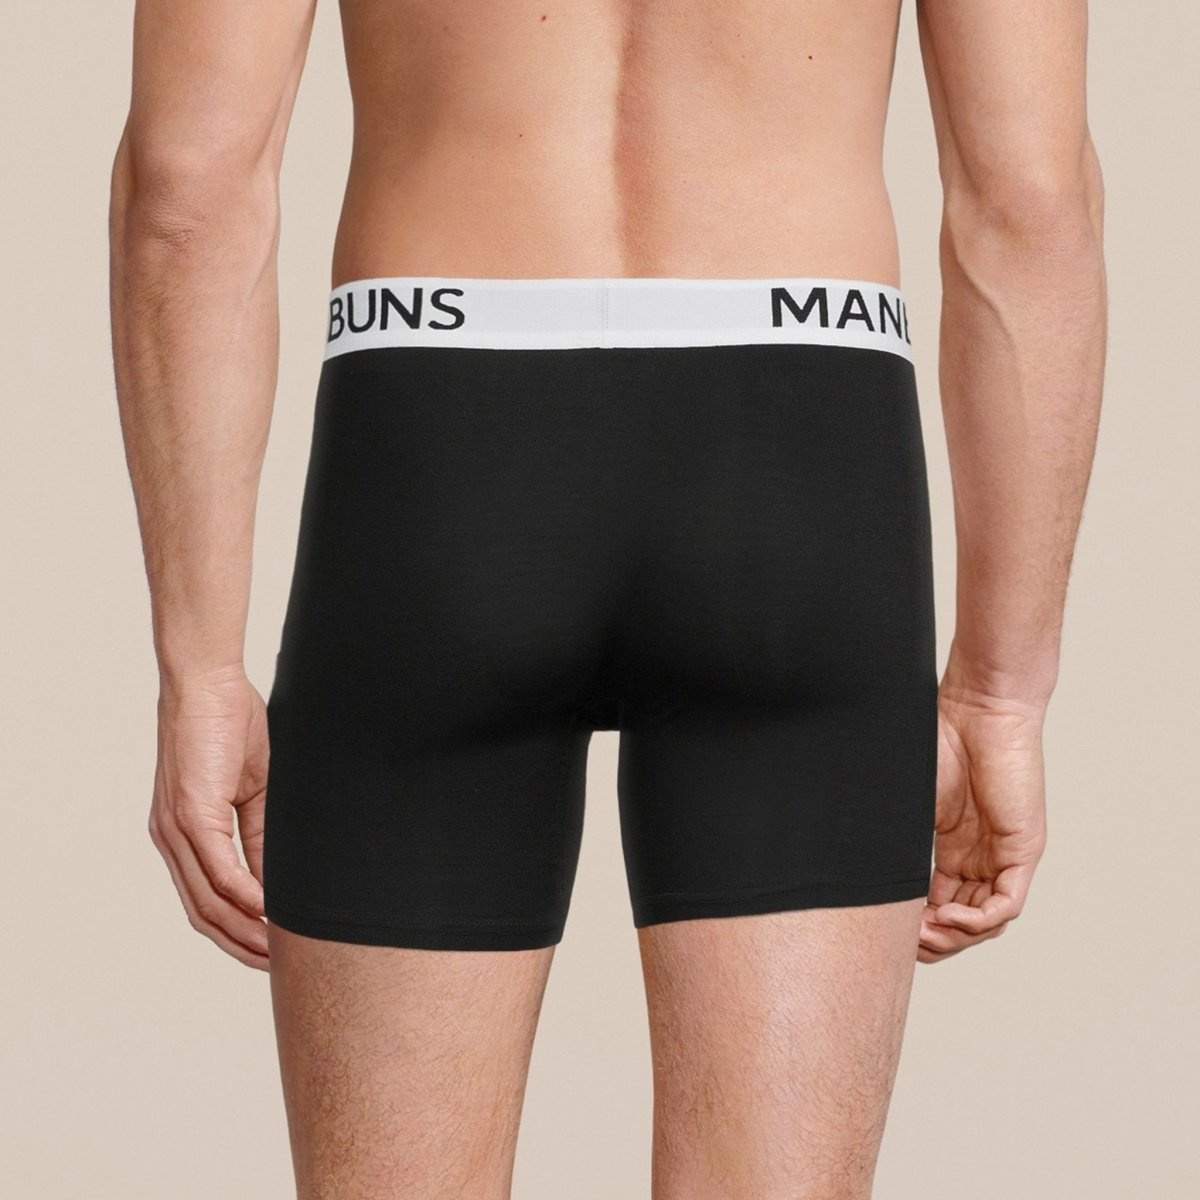 Classic Briefs, men's underwear